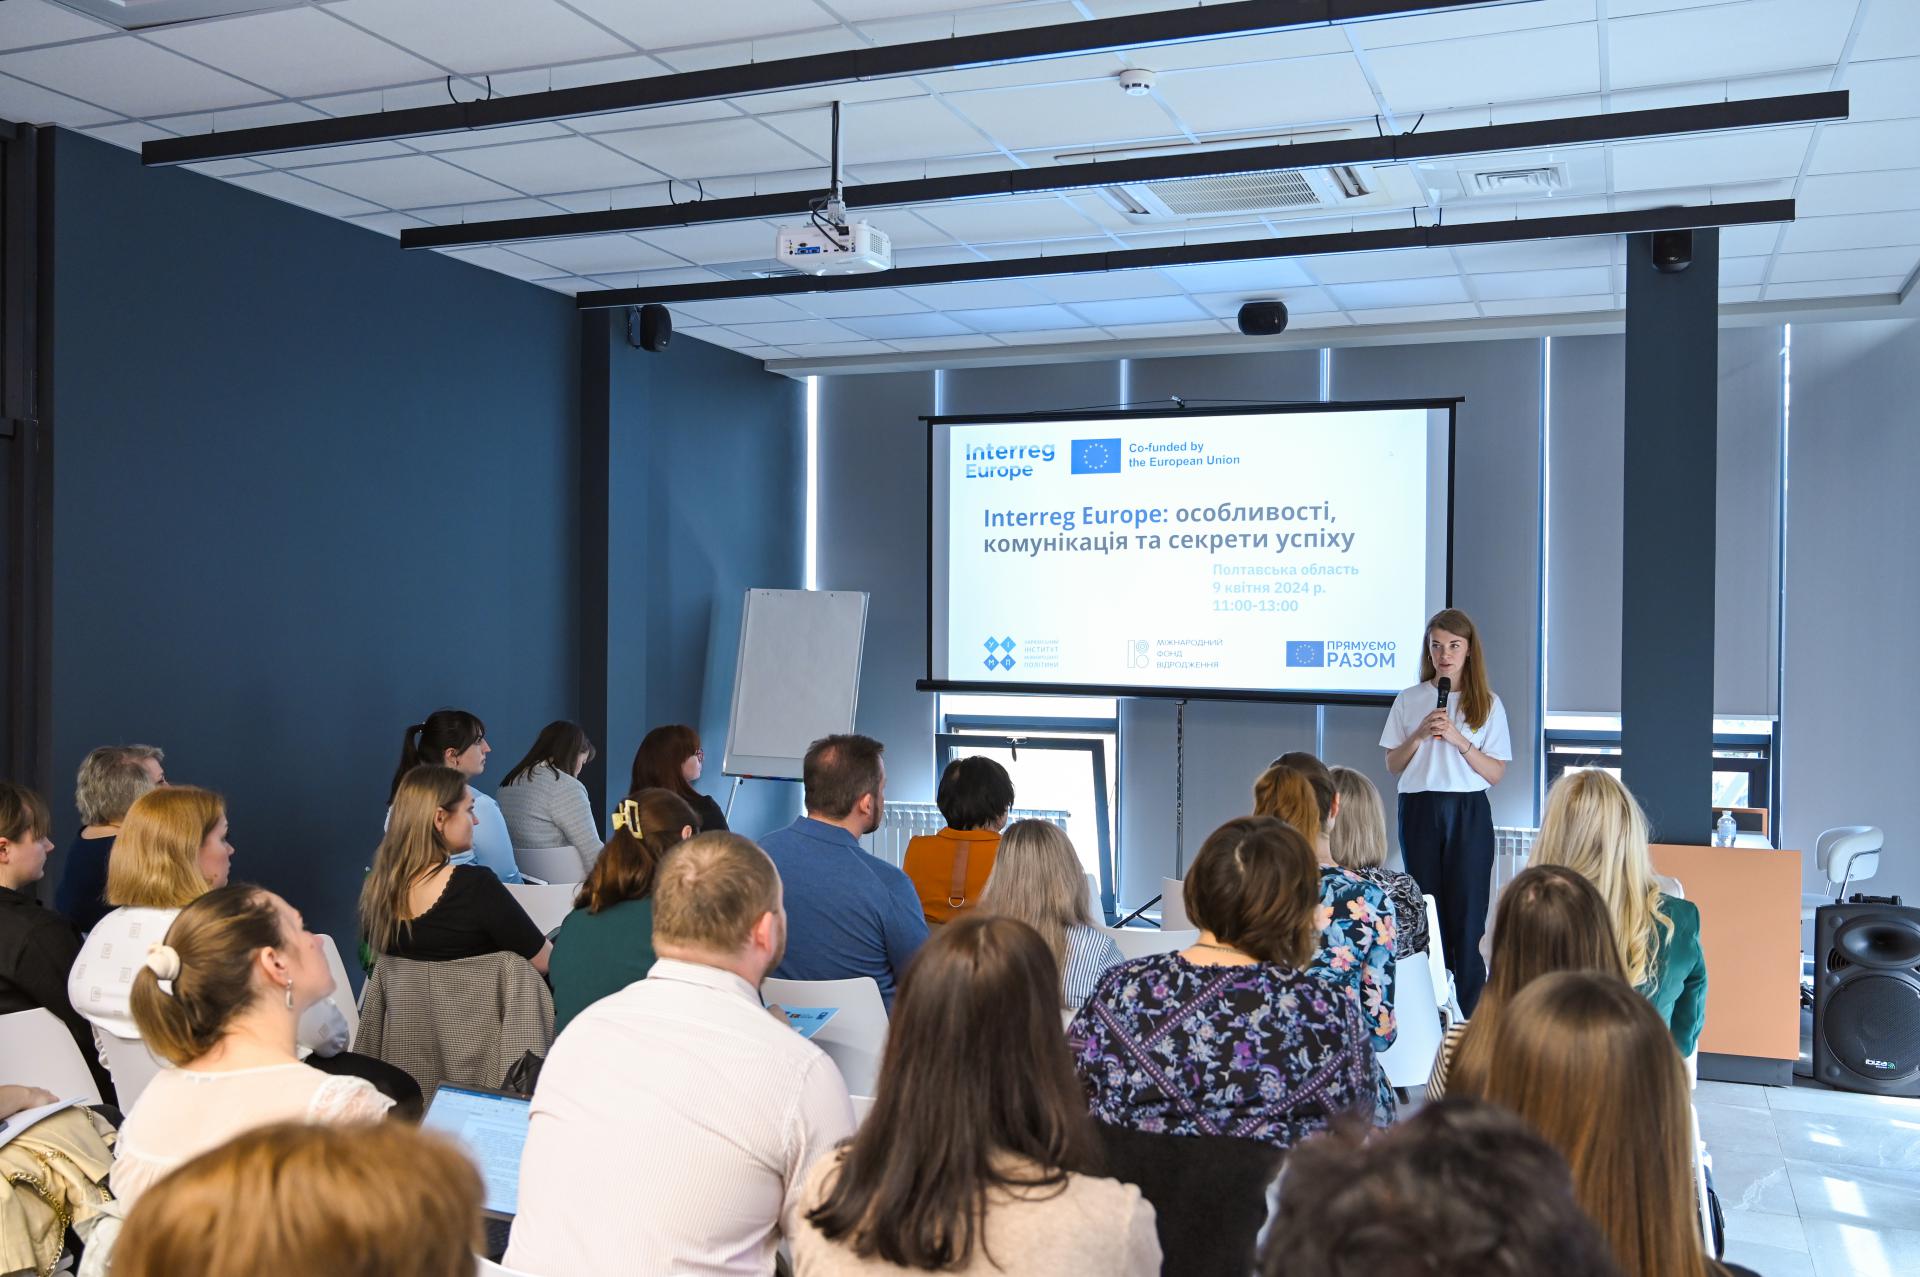 Представниці політехніки взяли участь у презентації програм міжрегіонального співробітництва ЄС Interreg Europe та URBACT